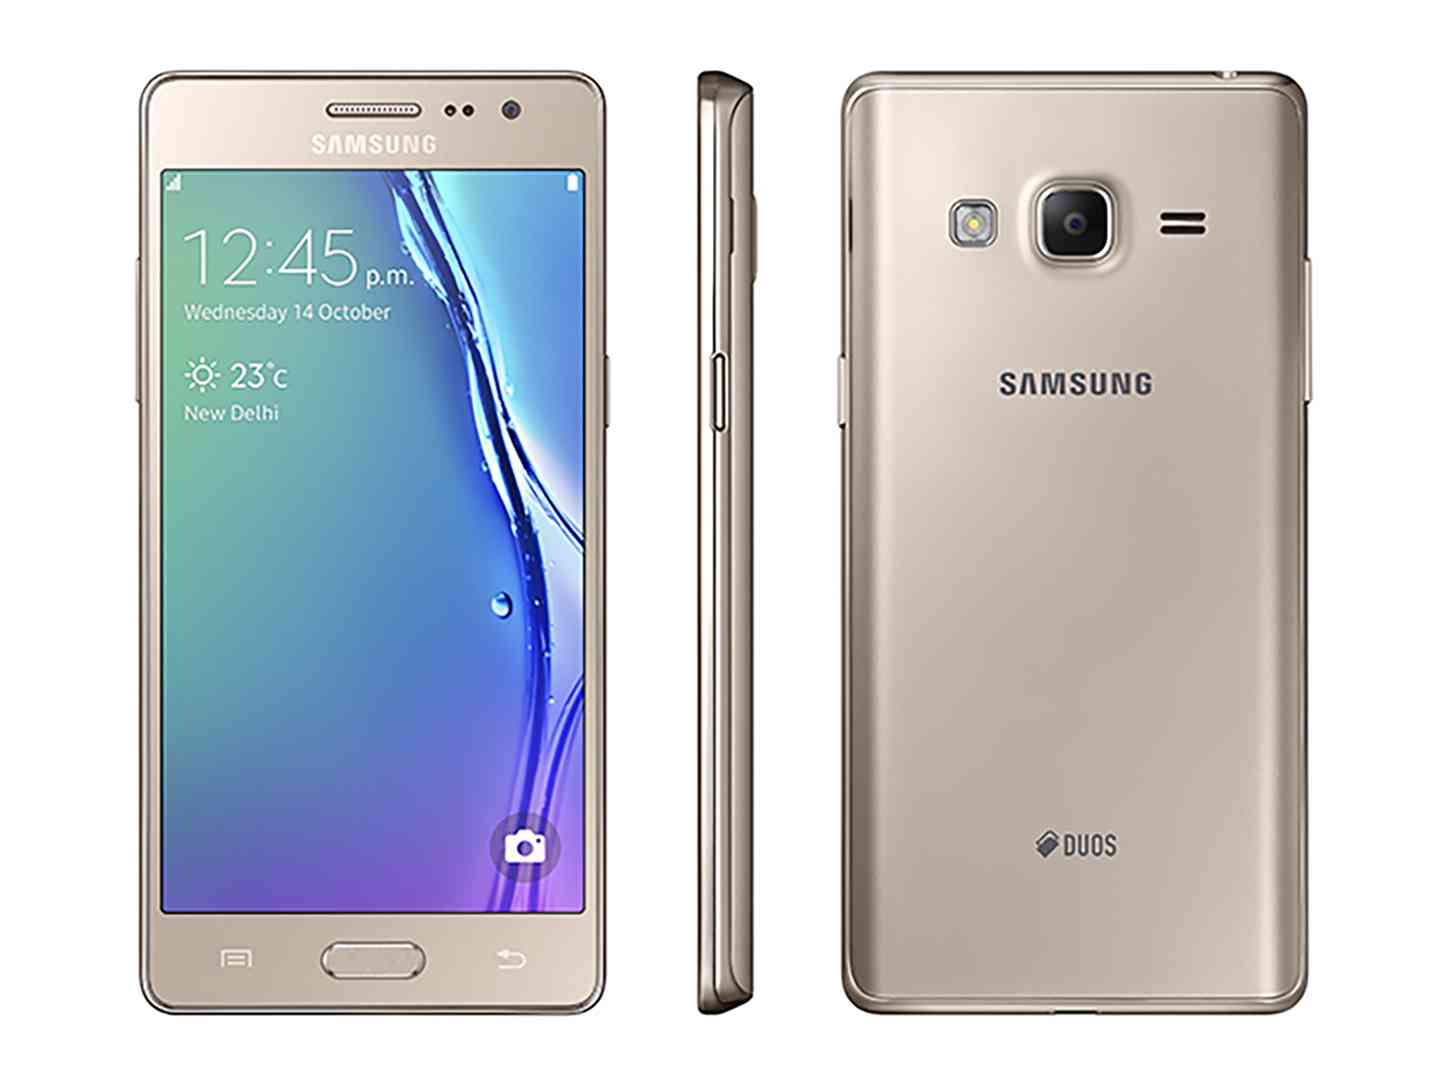 Samsung Z3 Tizen phone official